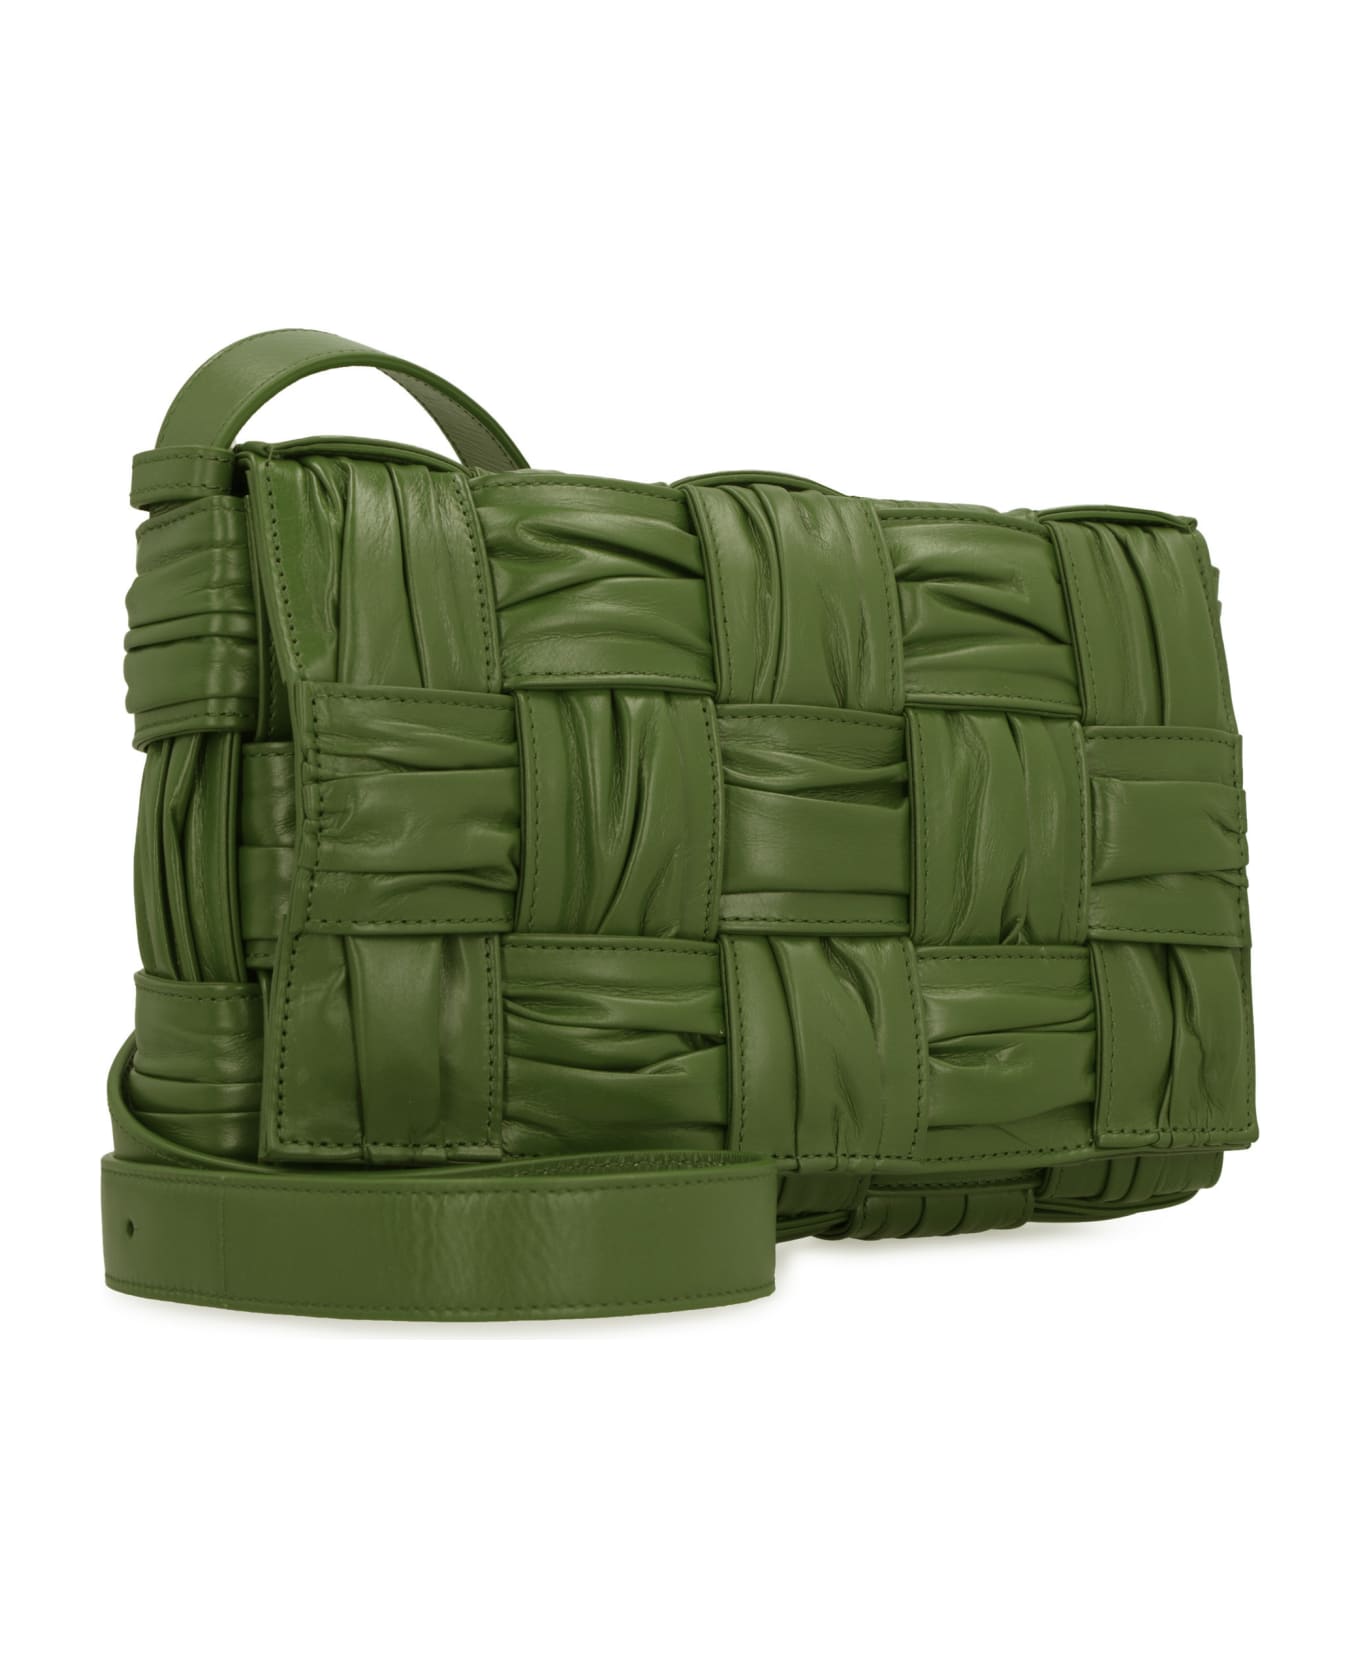 Bottega Veneta Cassette Leather Crossbody Bag - green